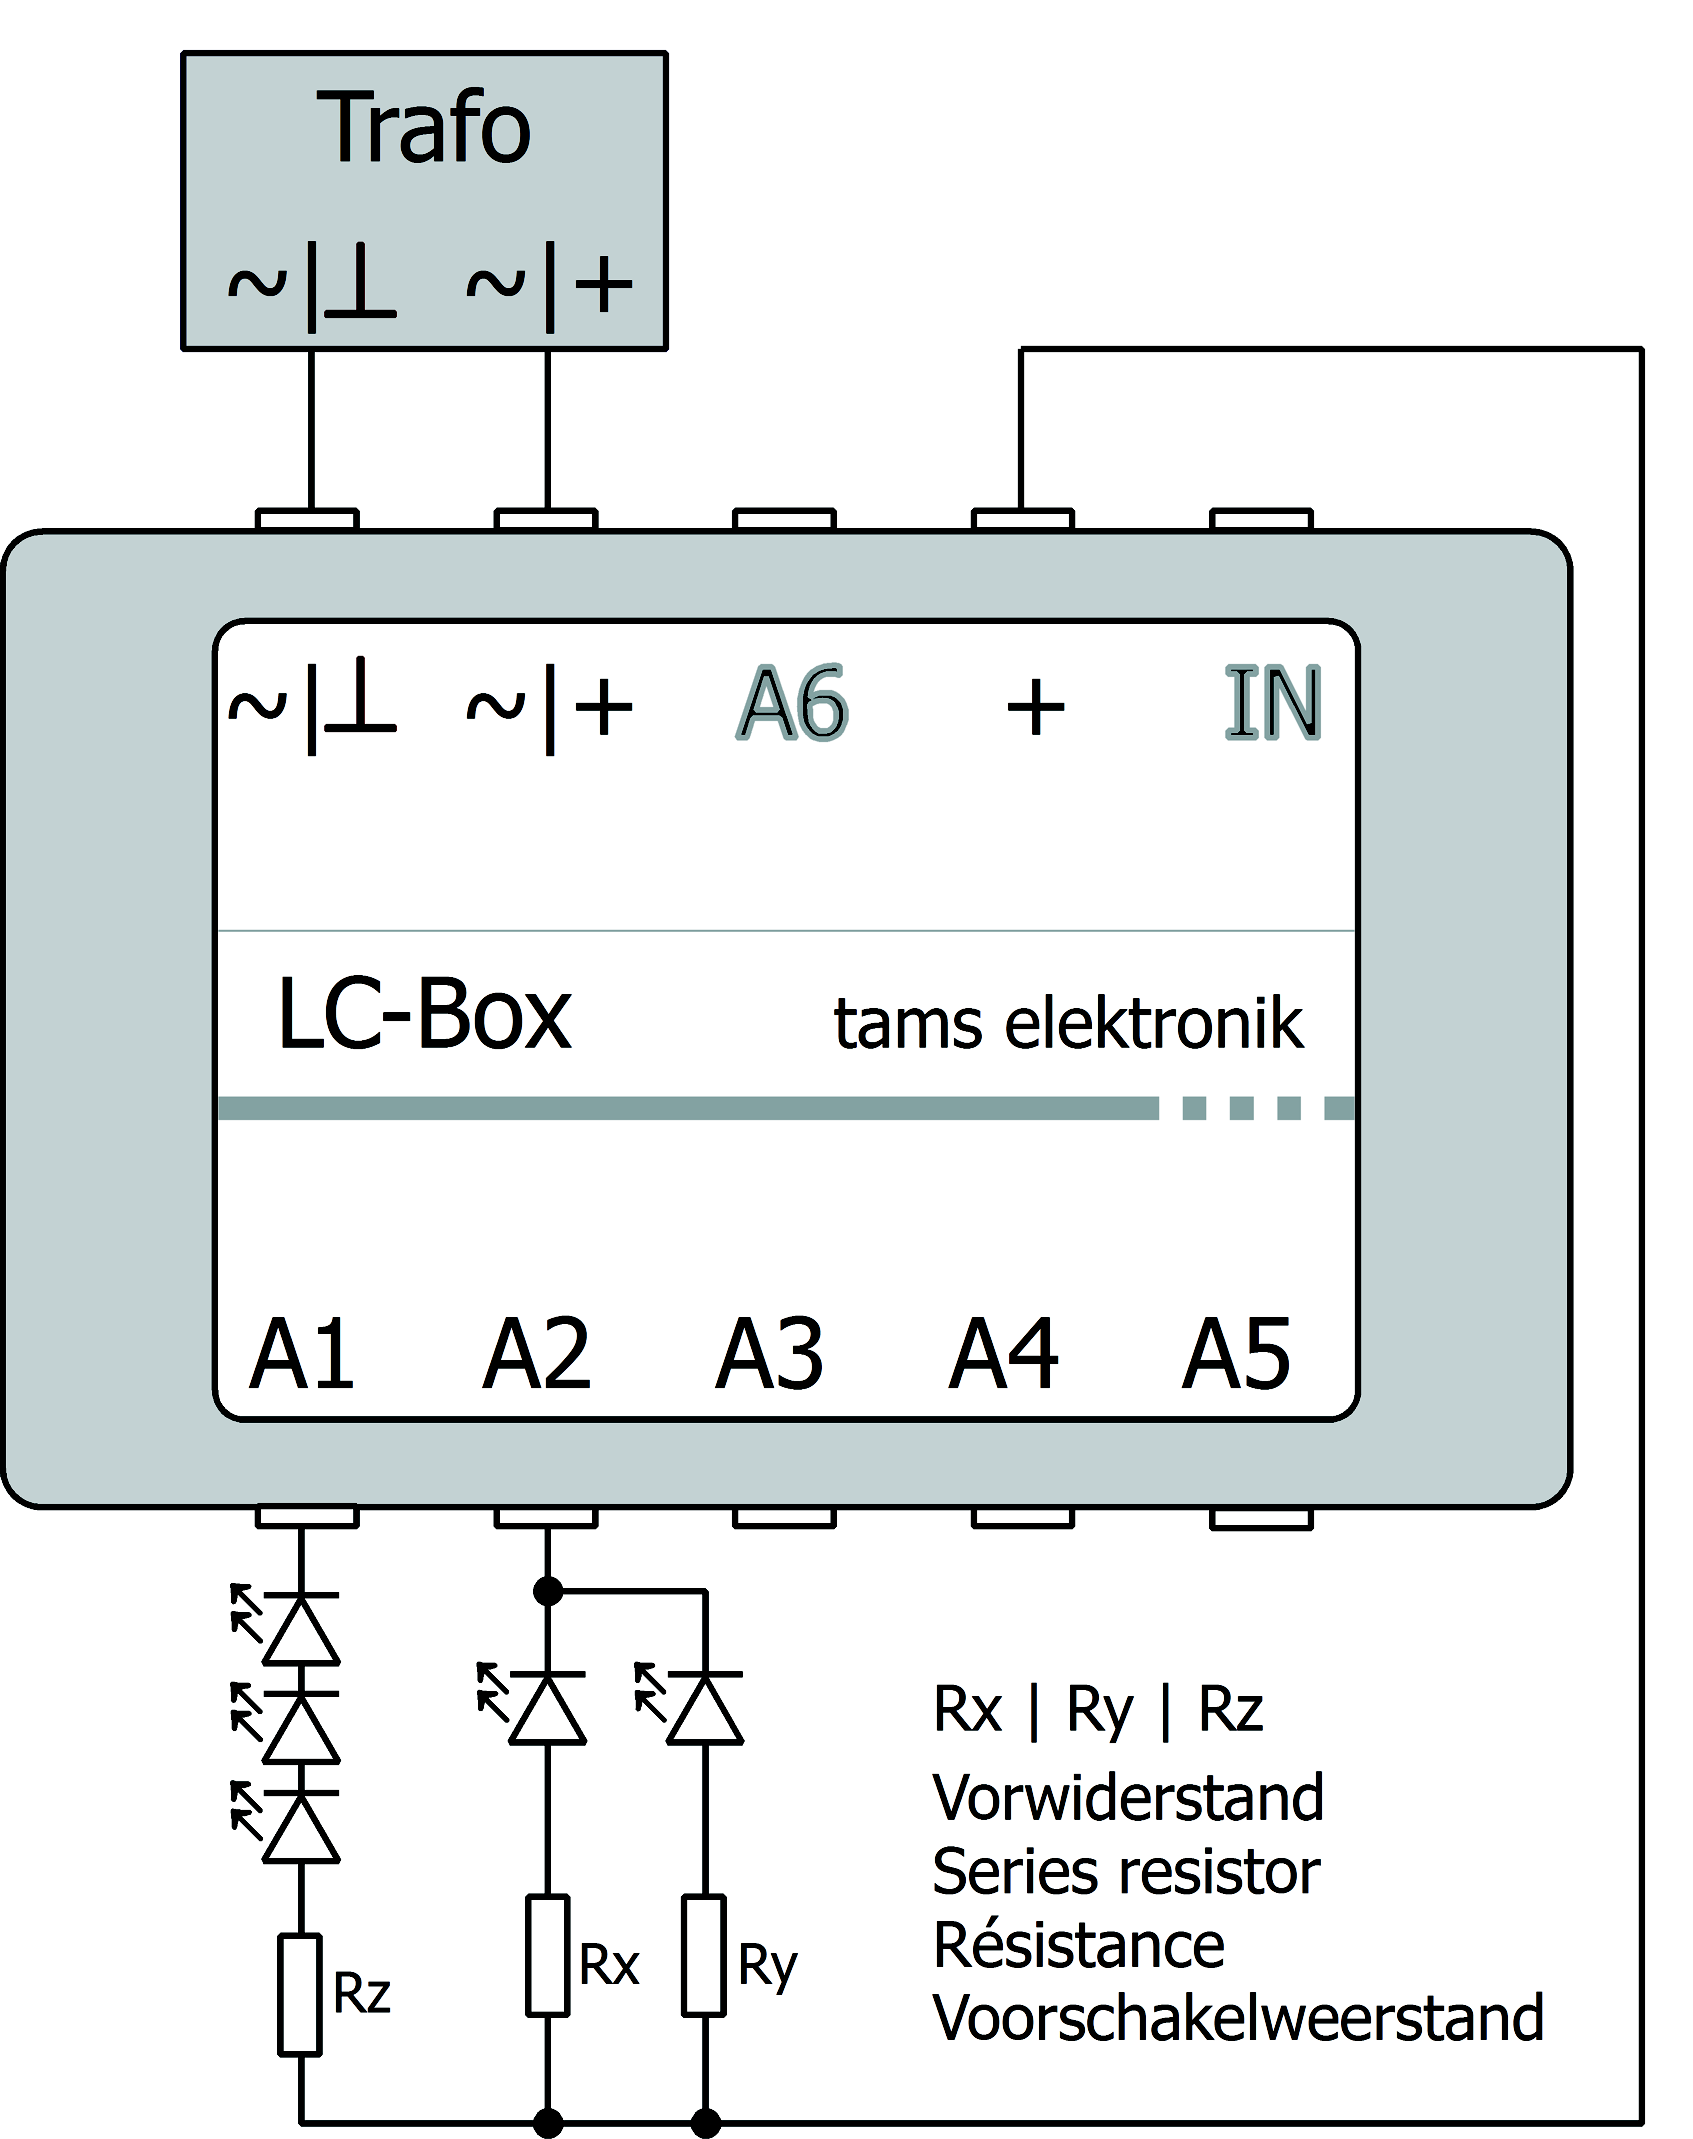 Nederlads Parallel aasluite va LEDs Voorbeeld het aasluite va LED's: Uitgag A1: Seriële aasluitig Uitgag A2: Parallelle aasluitig Bij het parallel aasluite wordt elke LED via ee eige